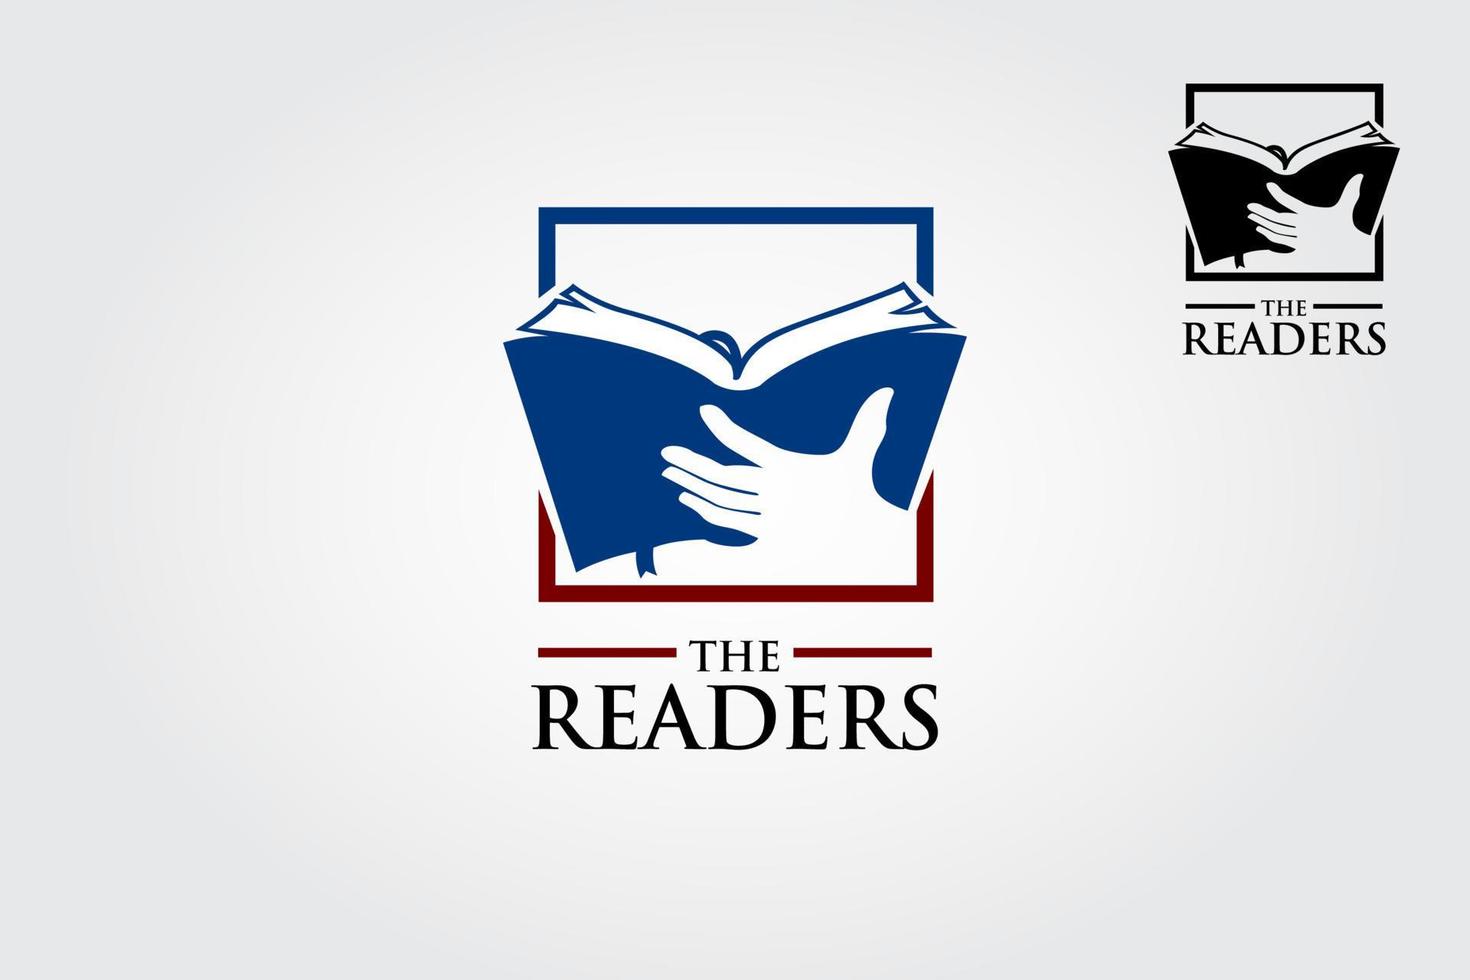 de lezer vector logo sjabloon. een uitstekend logo voor boek publishing bedrijf, ondersteuning schrijvers maken hun droom komen waar door helpen hen naar realiseren de boek in markt.